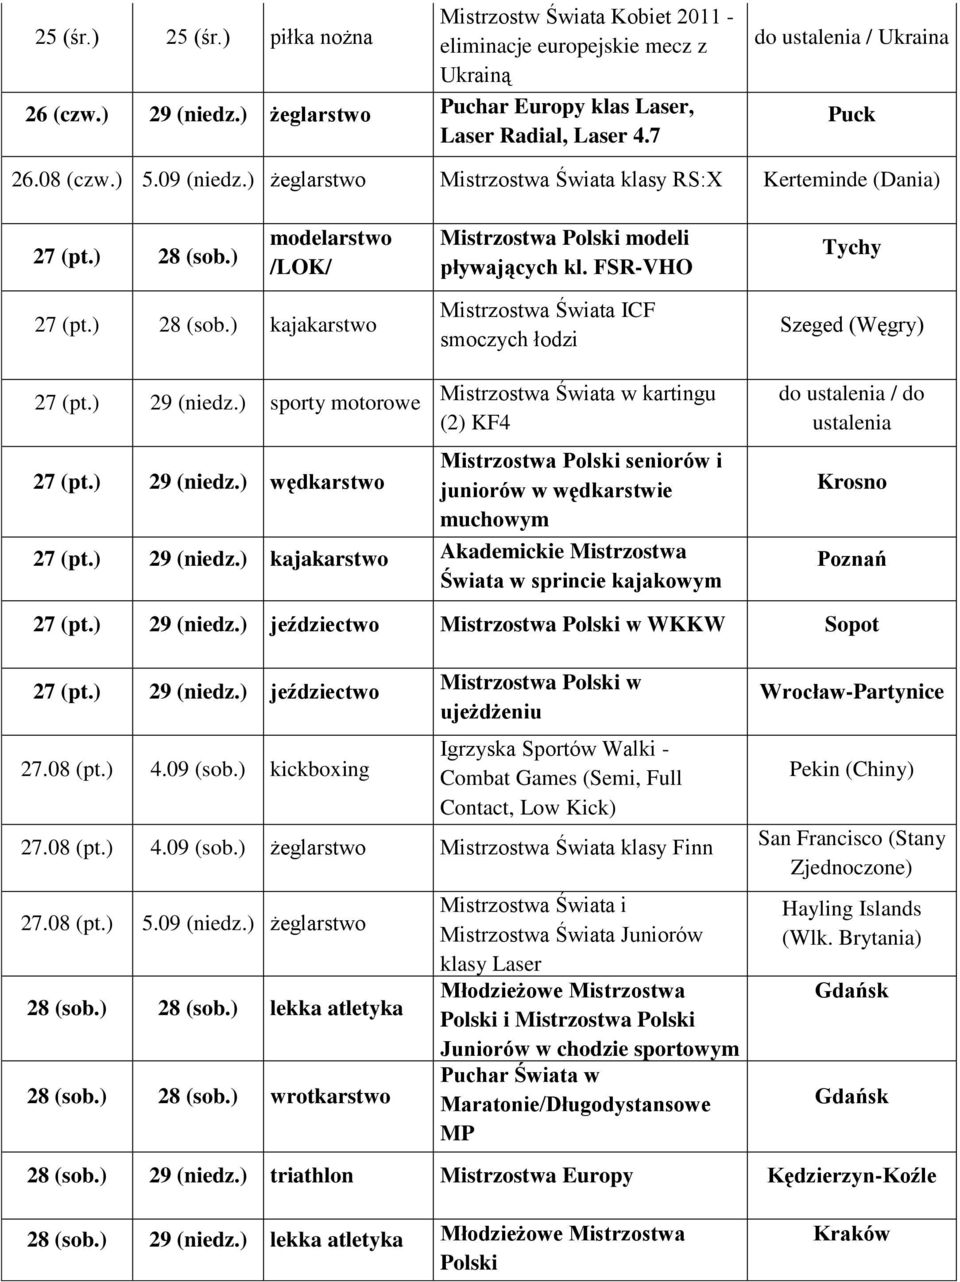 FSR-VHO Tychy 27 (pt.) 28 (sob.) kajakarstwo Mistrzostwa Świata ICF smoczych łodzi Szeged (Węgry) 27 (pt.) 29 (niedz.